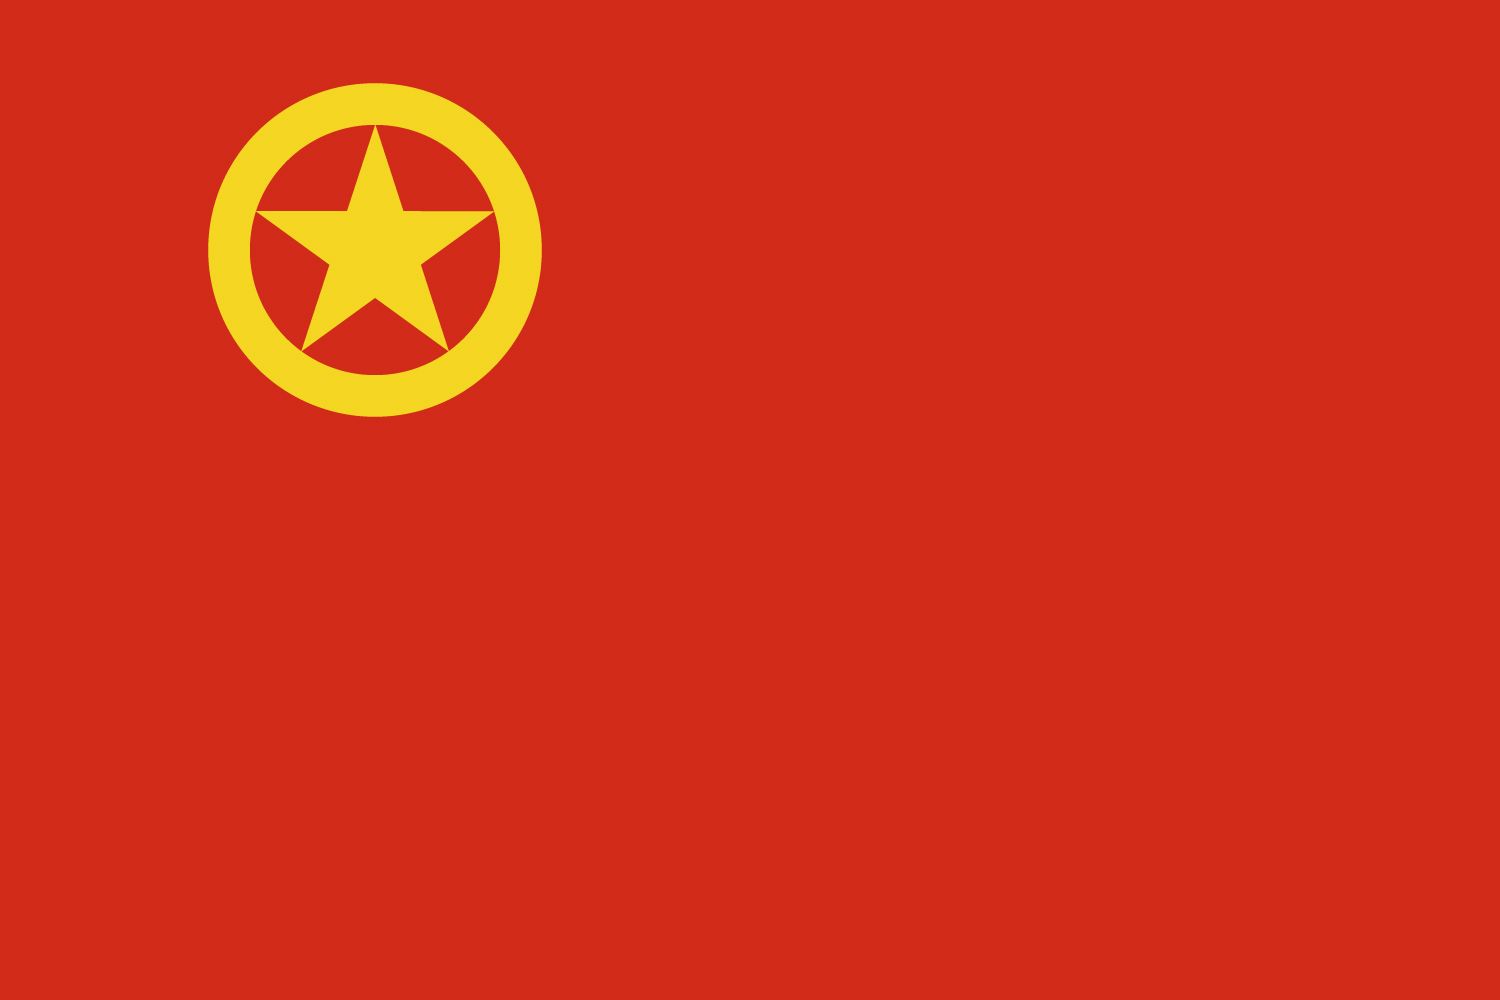 中國共產主義青年團雲南省委員會